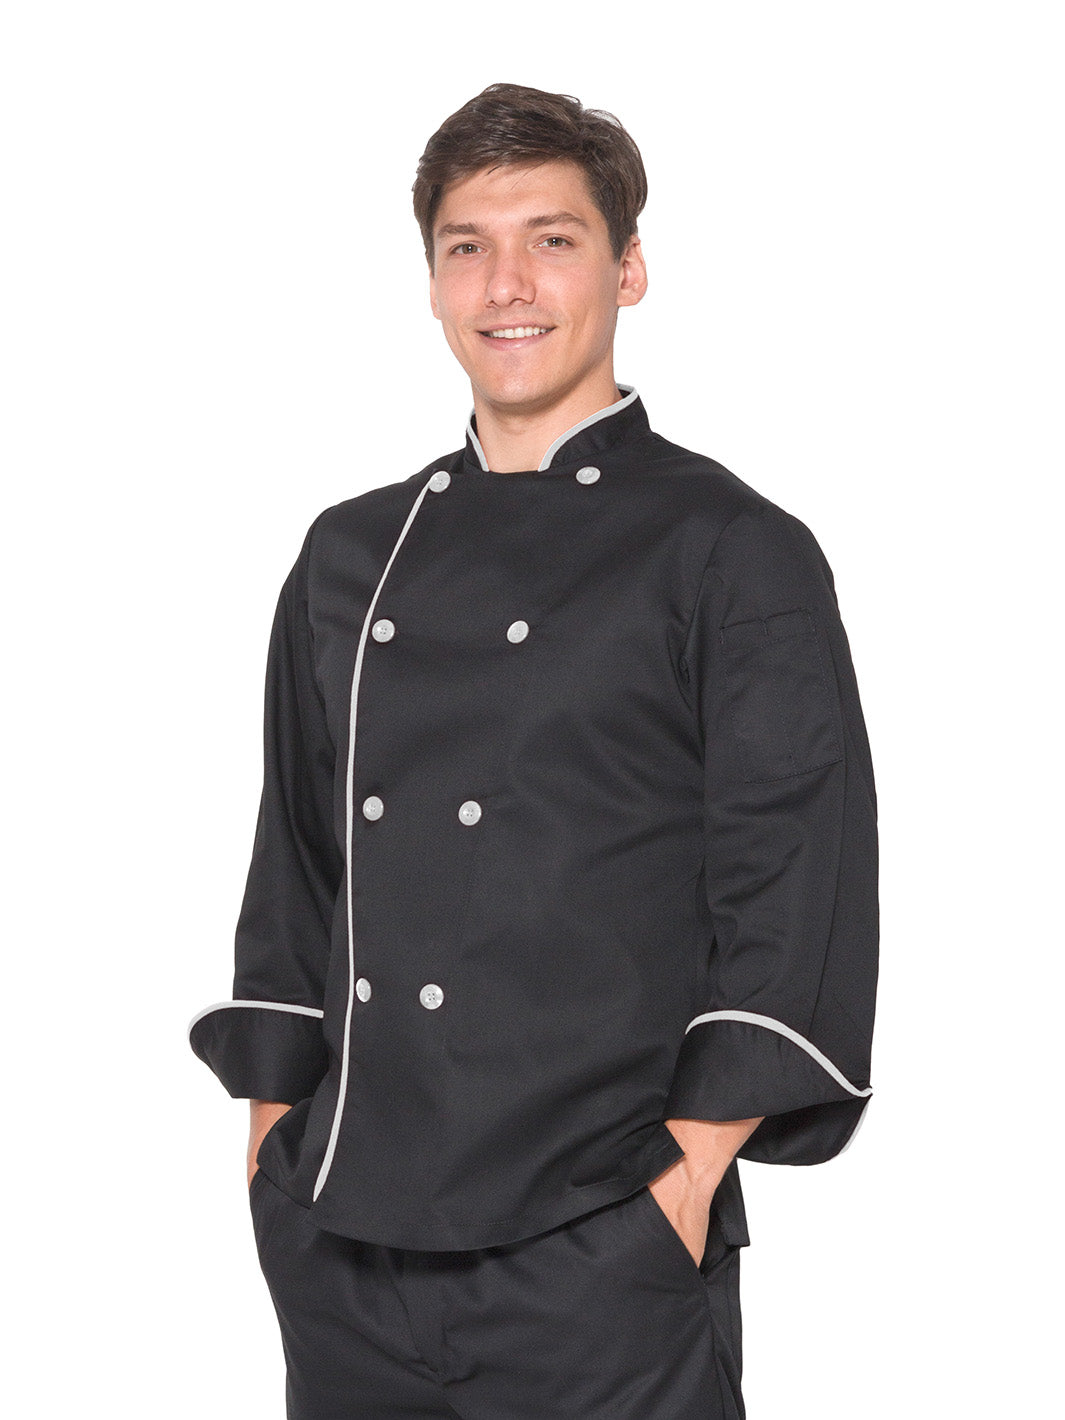 Hombre vistiendo filipina de chef unisex color negro con vistas blancas, mangas de puño redondeado, doble fila de botones con cruce reversible, y bolsa en manga izquierda. 